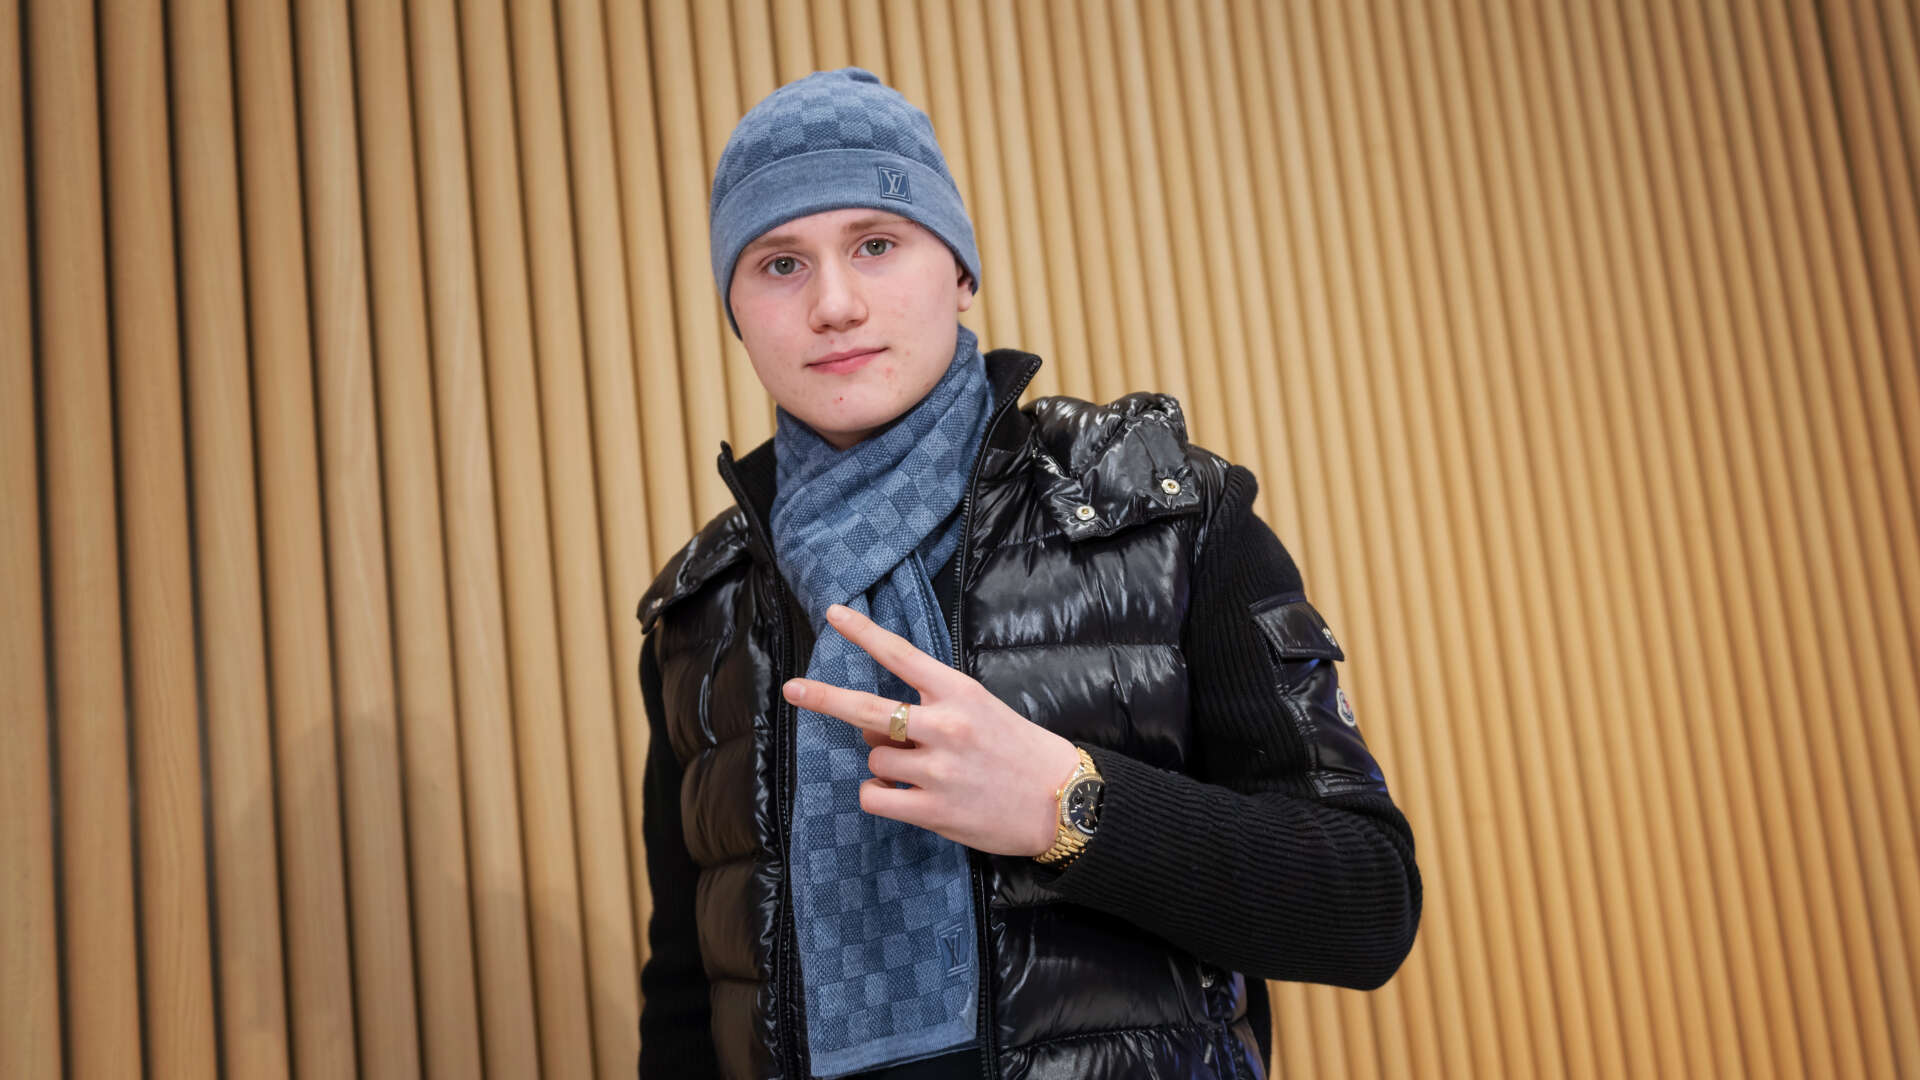 Rapstjärnan Einár har avlidit, här på bild i december 2019, hans stora genombrottsår.